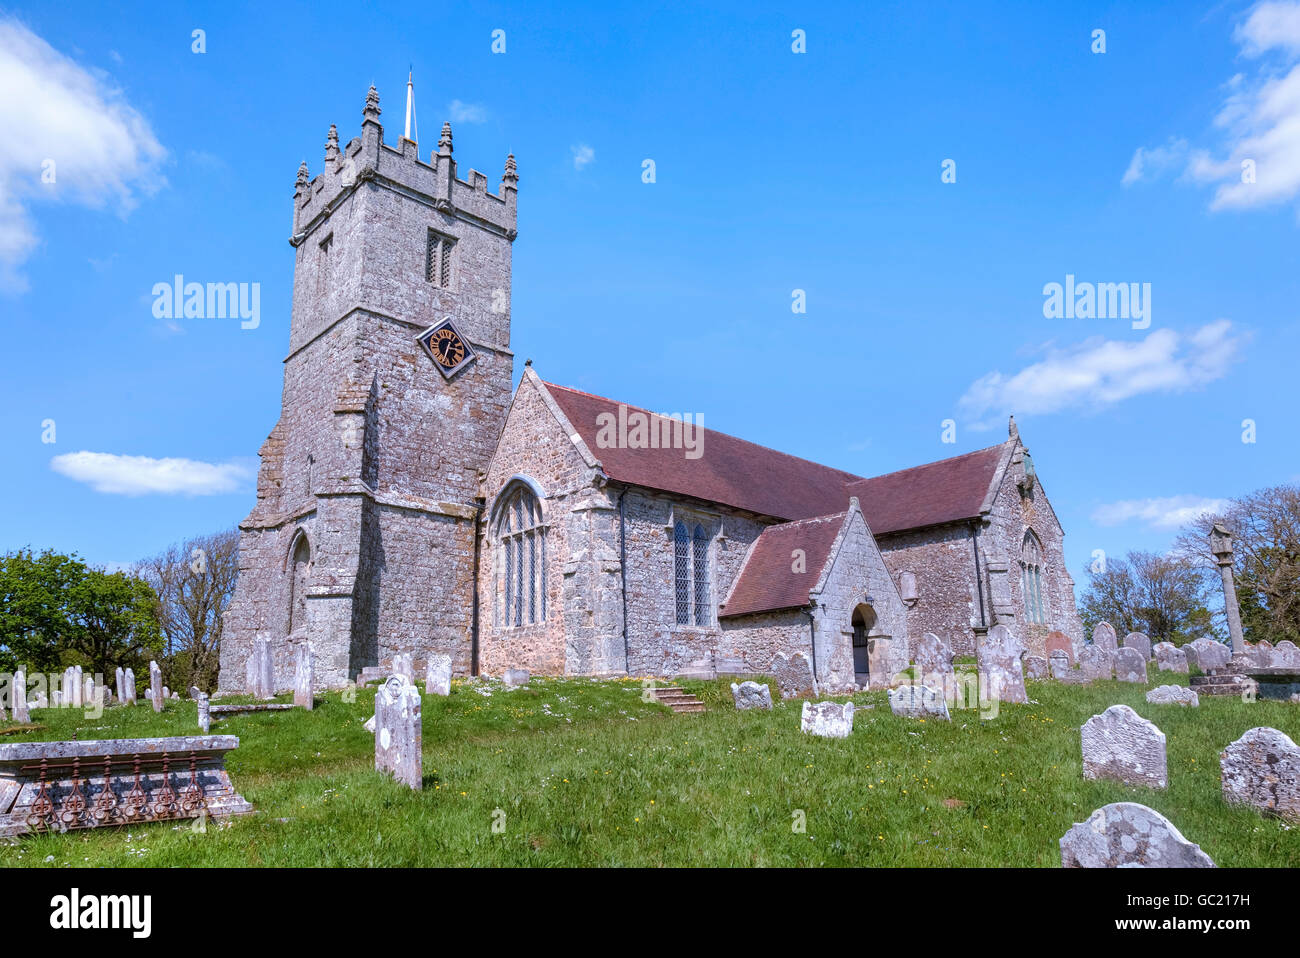 Godshill ; All Saints' Church, à l'île de Wight ; Hampshire Angleterre ; Banque D'Images